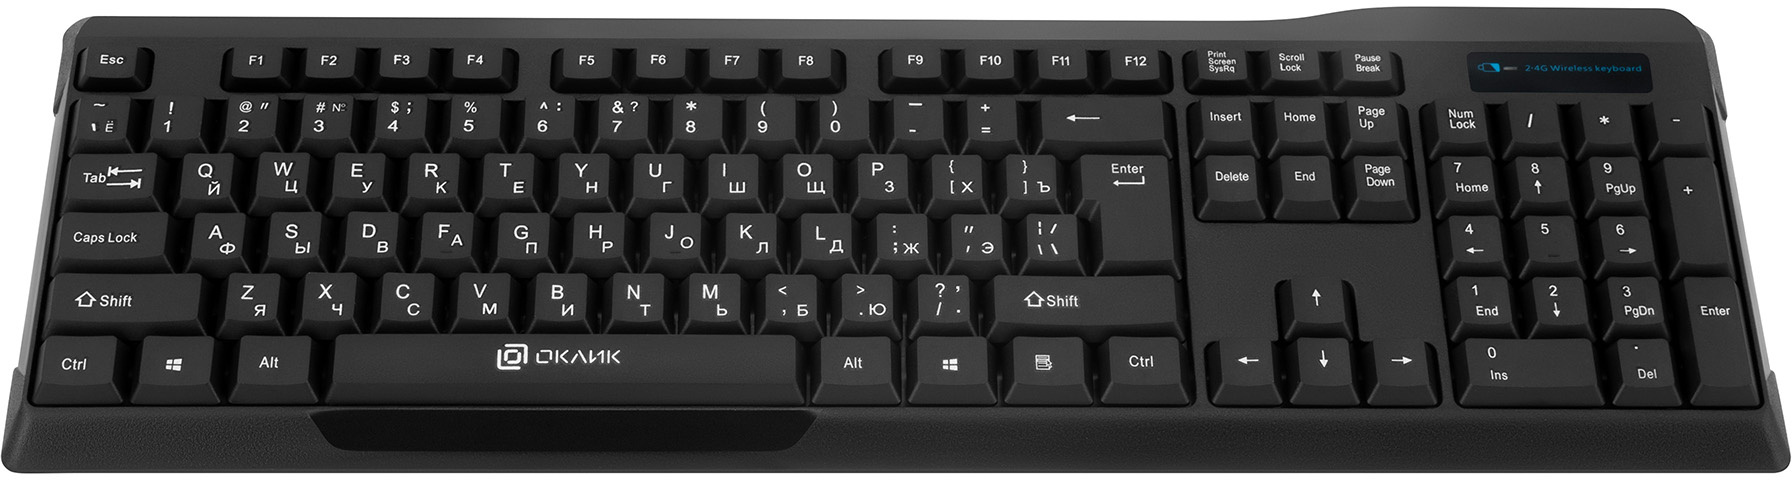 Клавиатура+мышь Oklick 230M клав:черный мышь:черный USB беспроводная